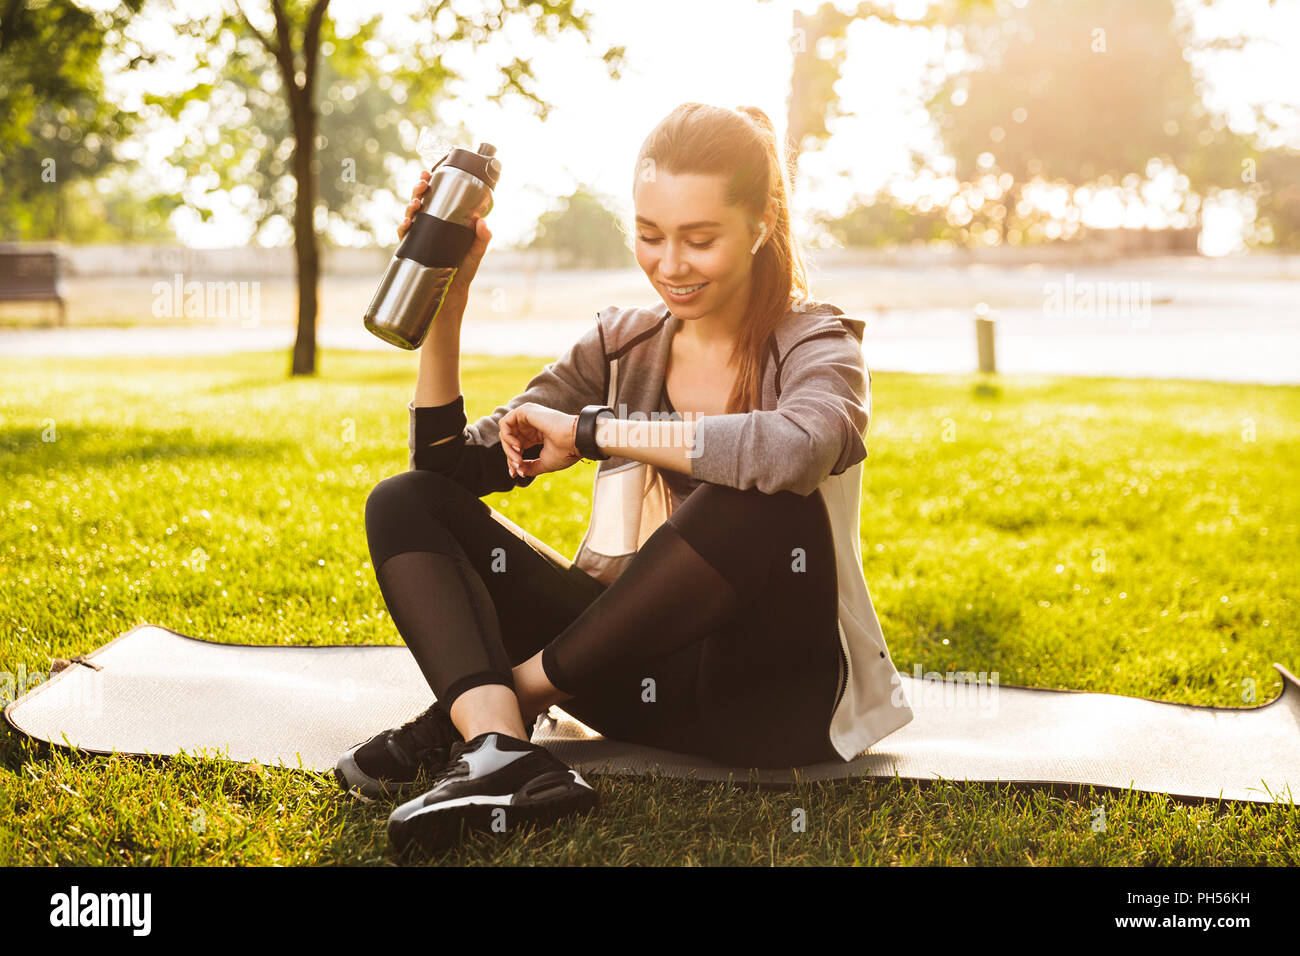 Foto von Ihnen fitness Frau 20 s in Sportkleidung Trinkwasser aus Metall Schale und smartwatch sitzend auf trainingsmatte im Green Park Stockfoto